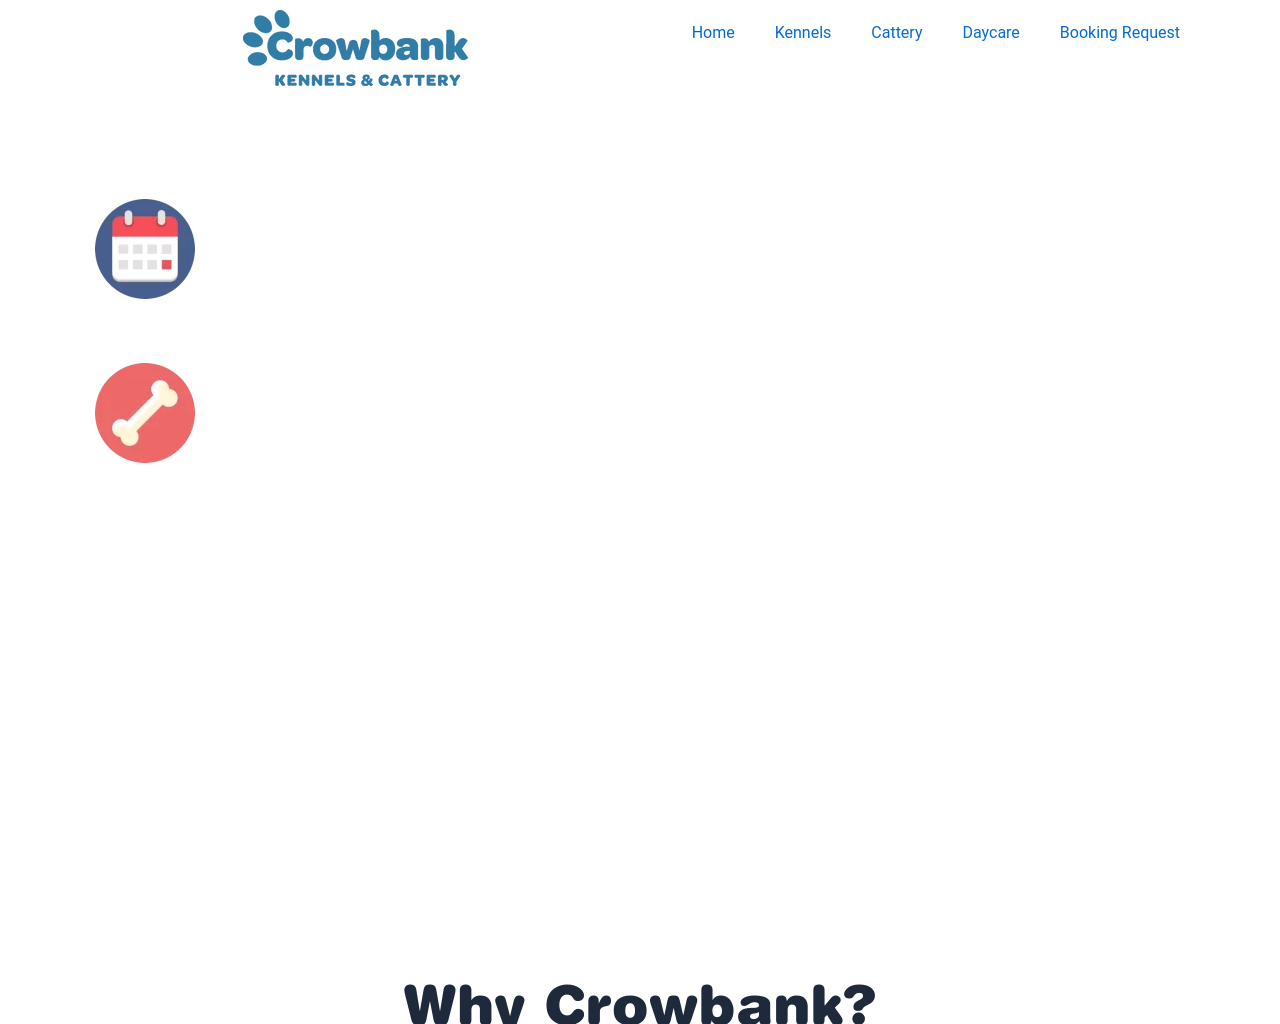 crowbank.co.uk